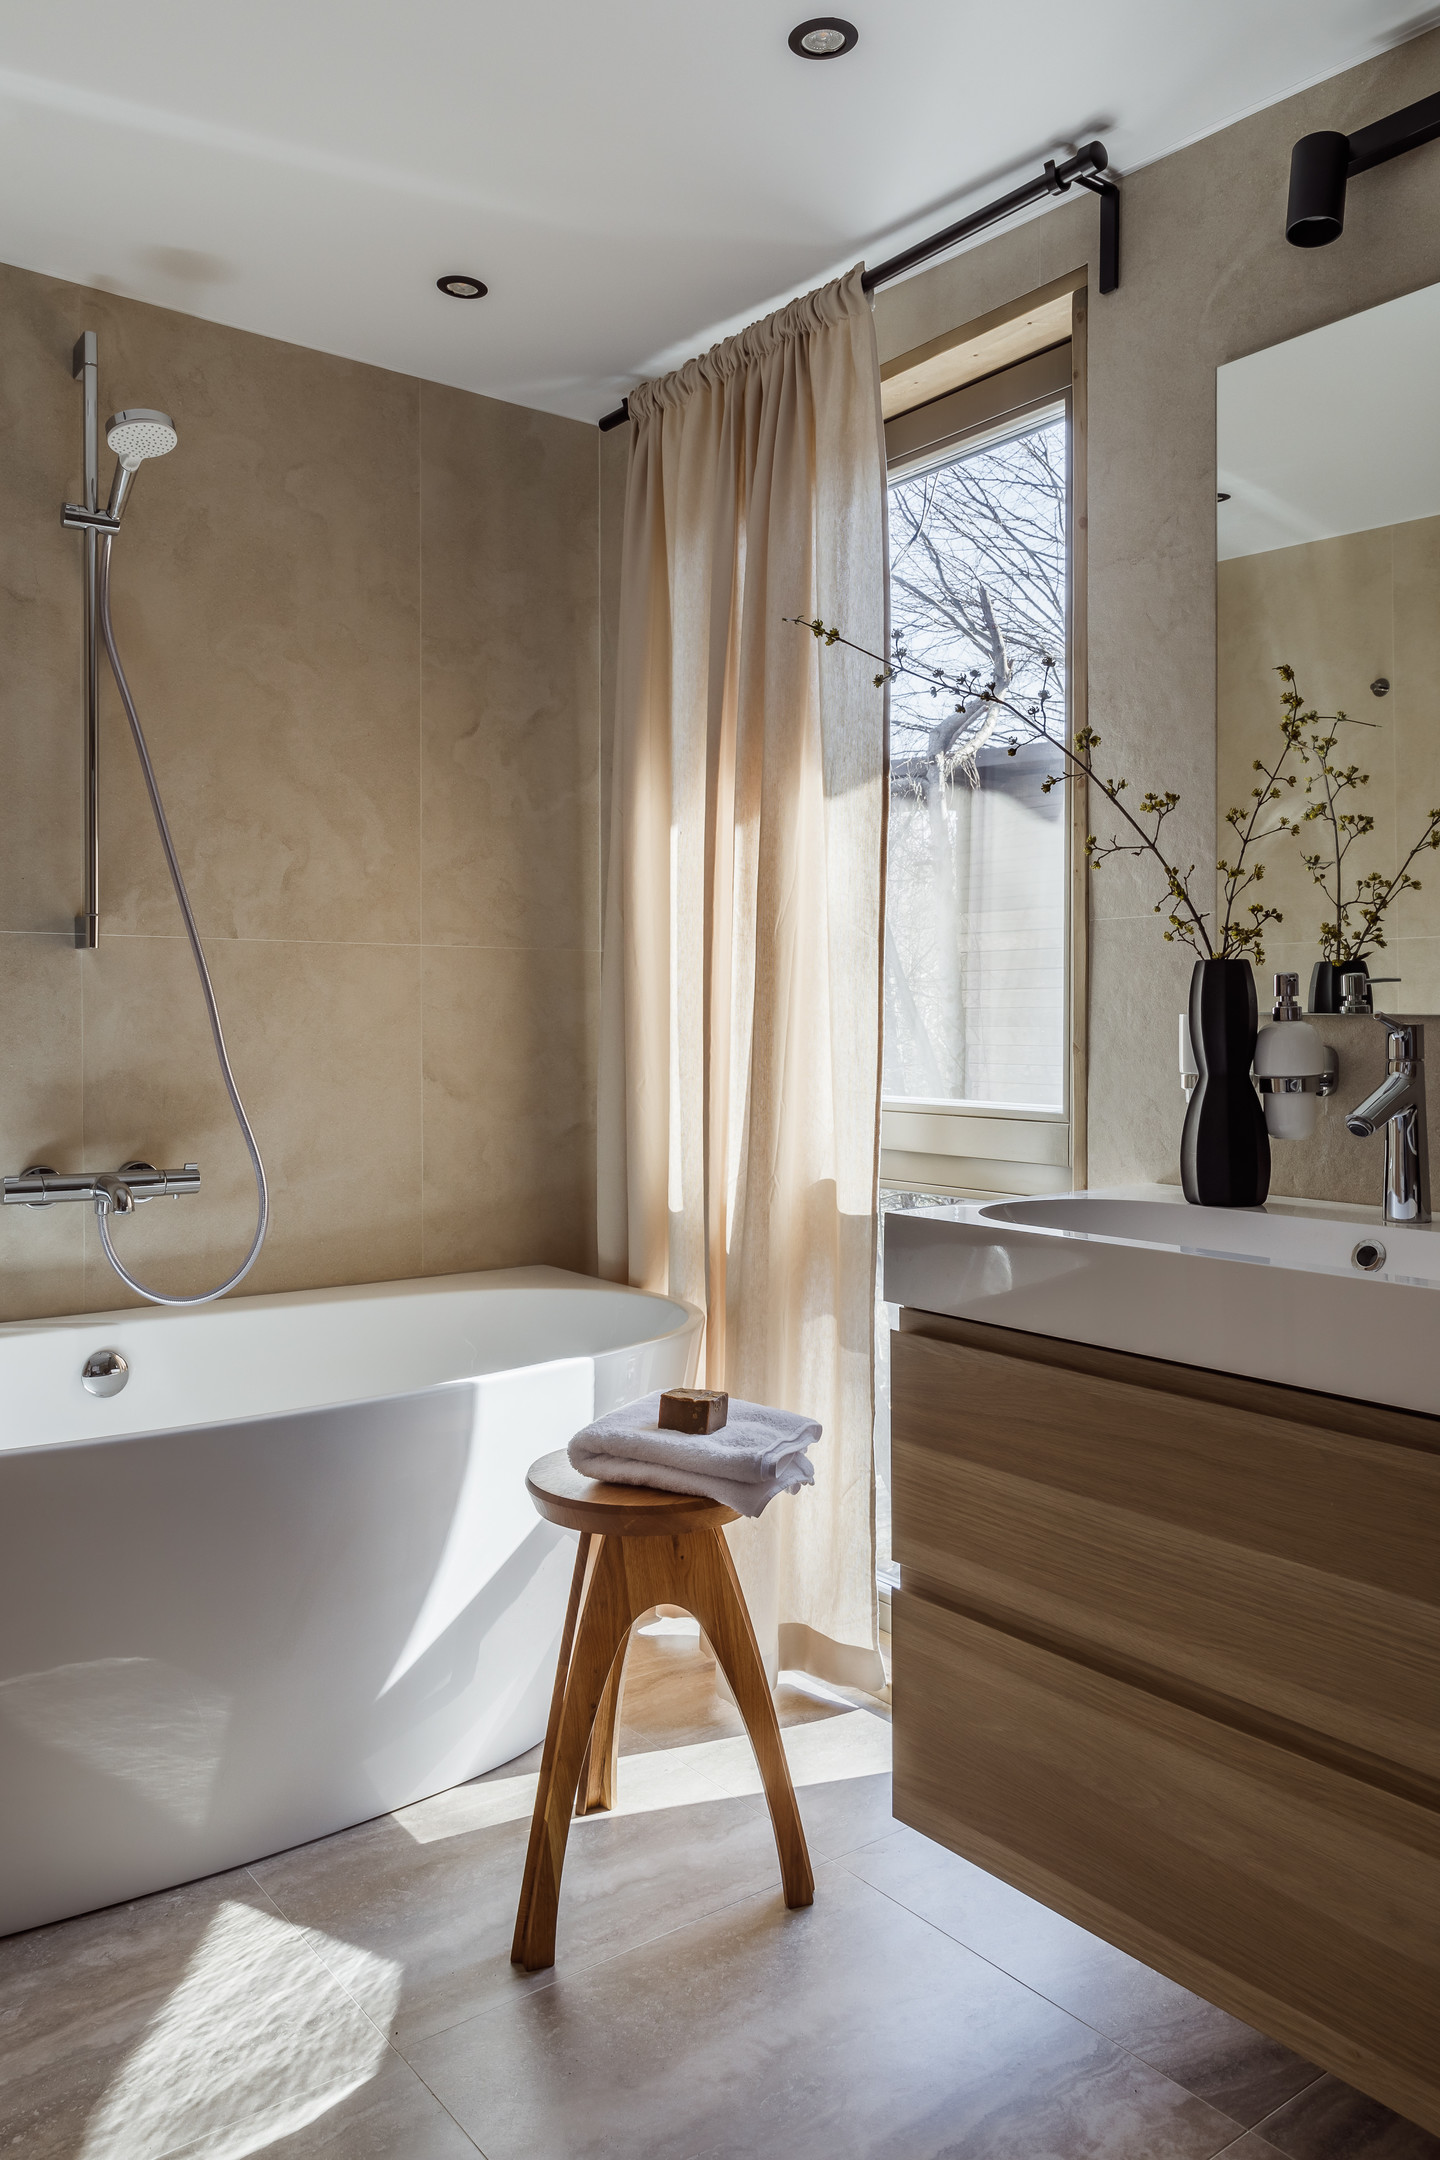 Nội thất, phụ kiện bằng gỗ được xử lý chống thấm, chống mốc, hoàn toàn phù hợp với điều kiện ẩm ướt của phòng tắm. 